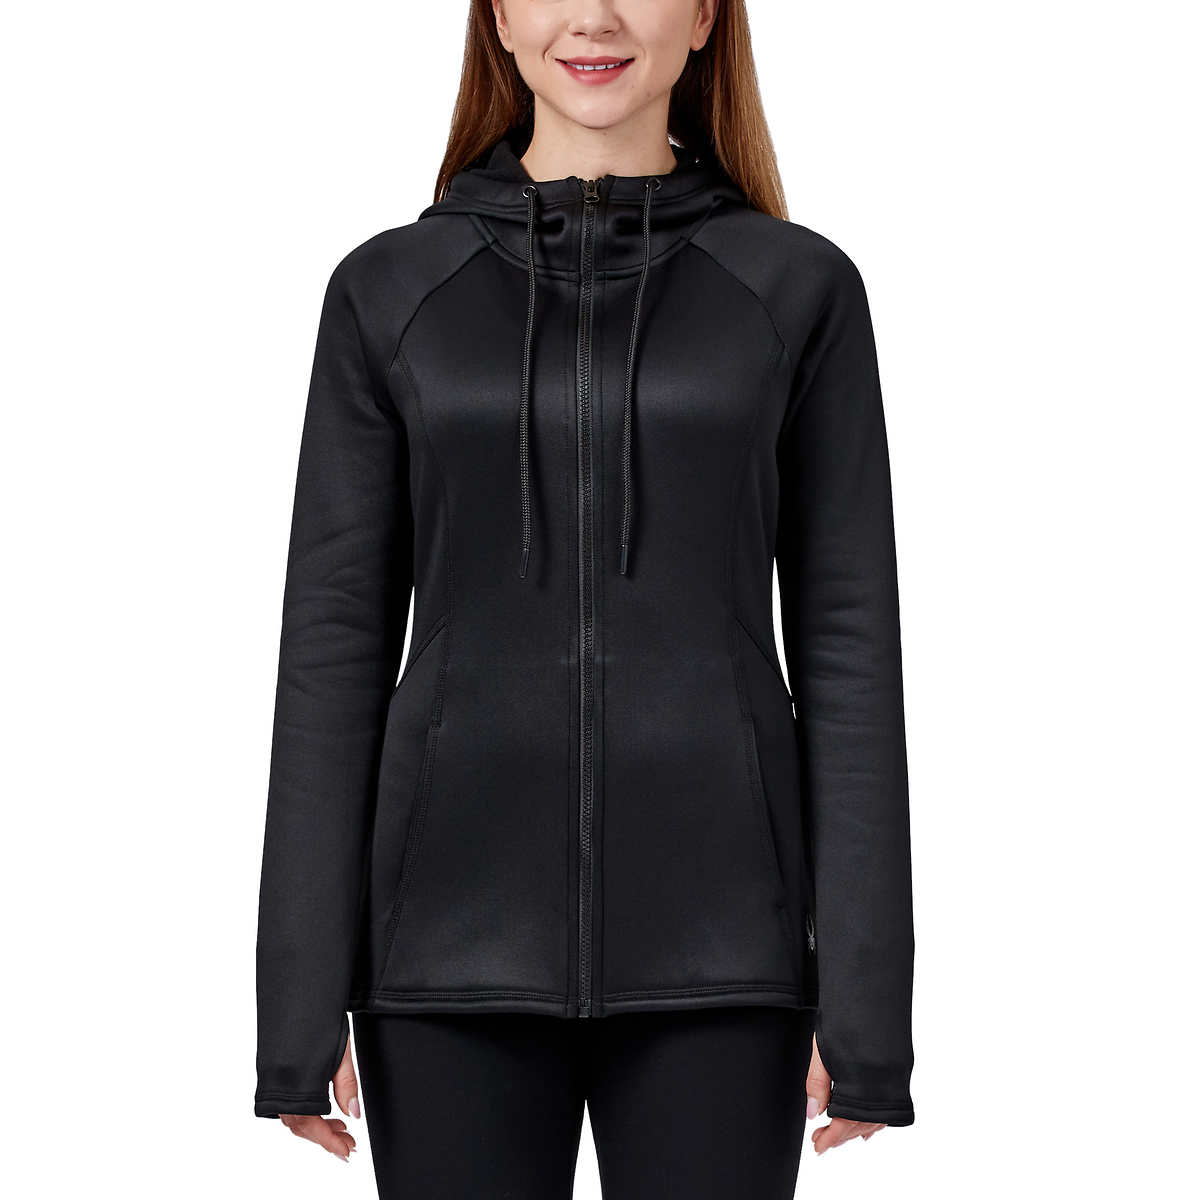 Spyder Women's Full Zip Hoodie Jacket